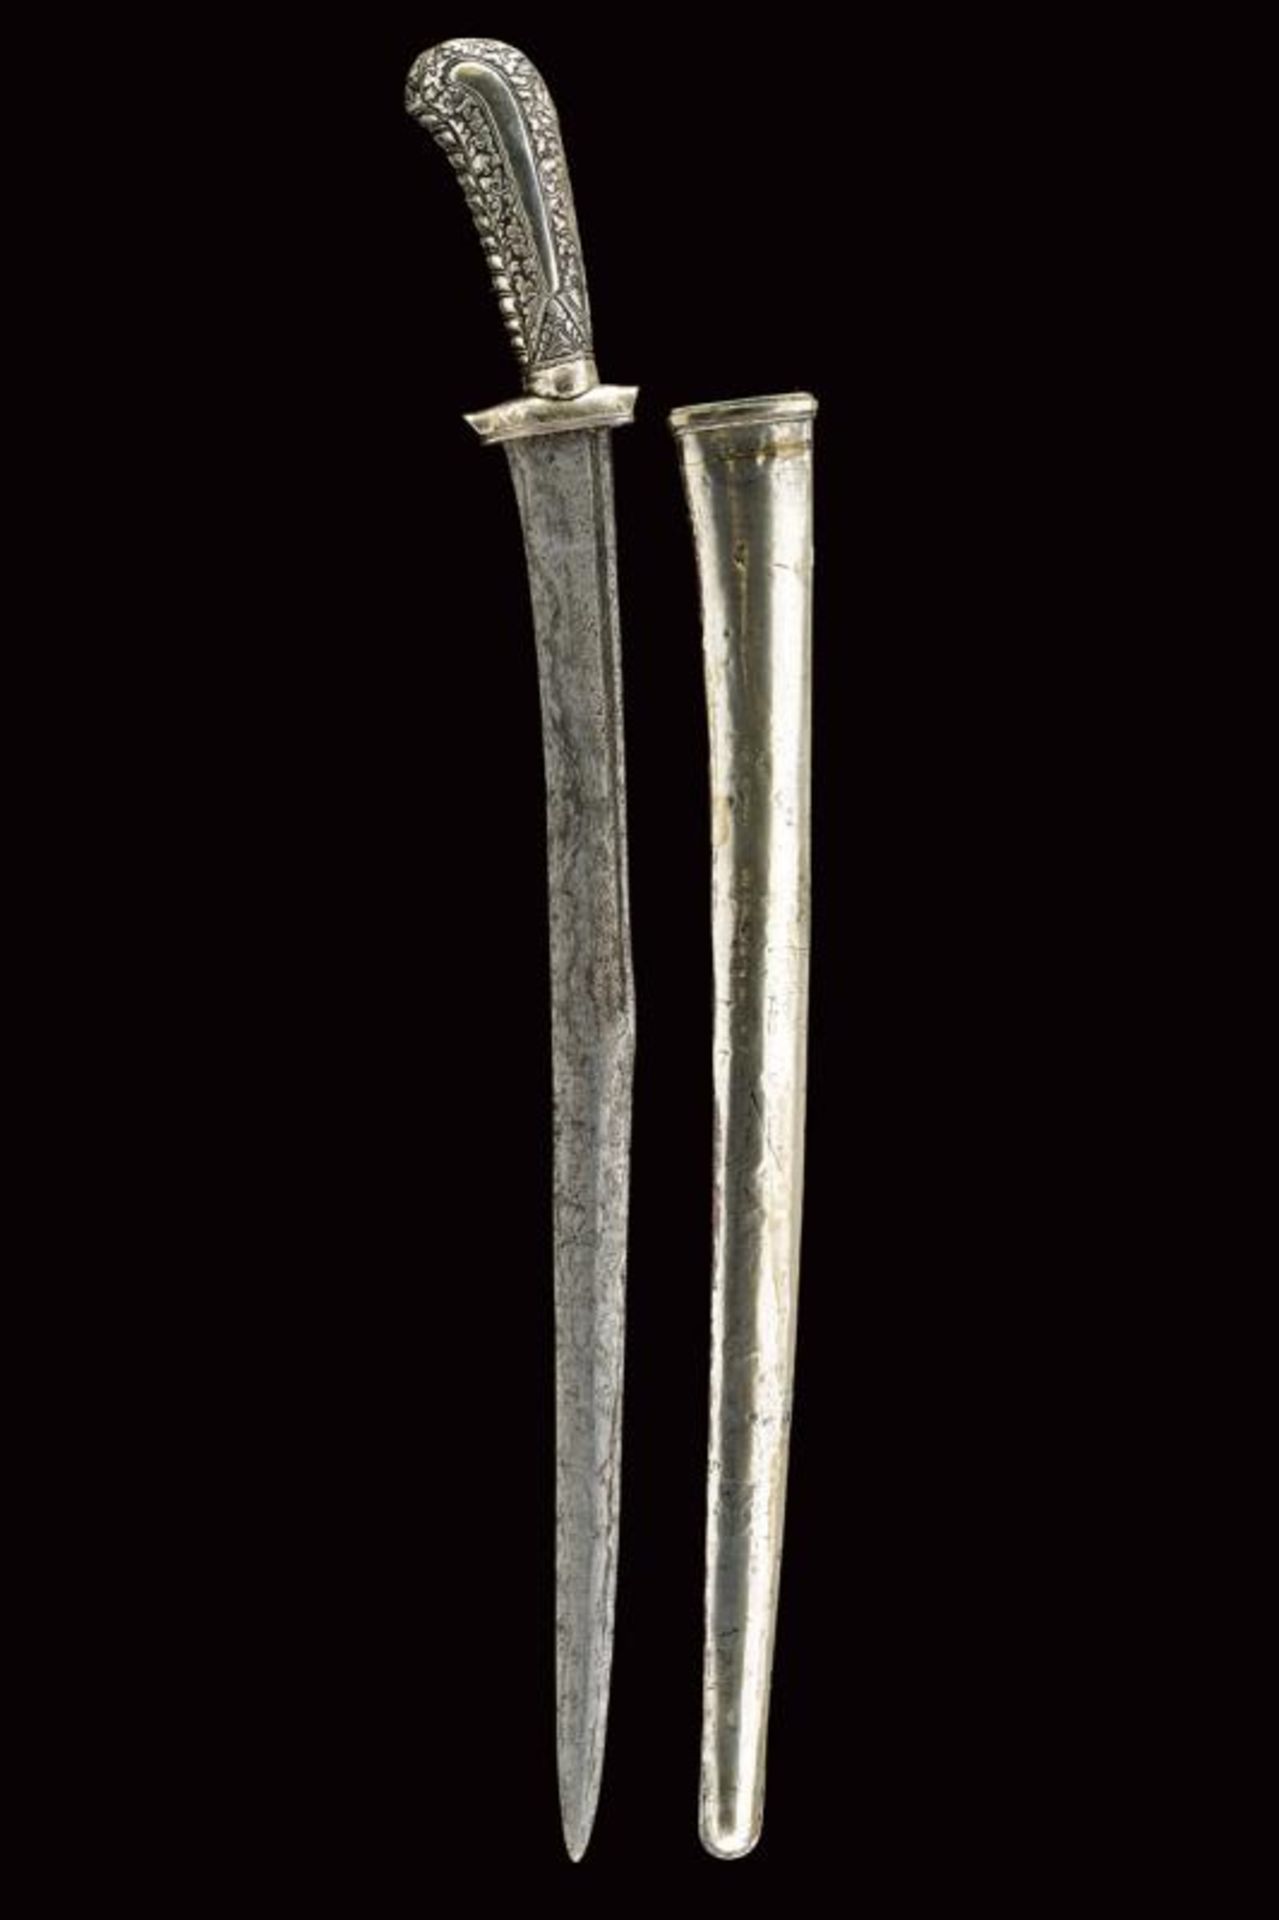 A Pendang Suduk (sword)